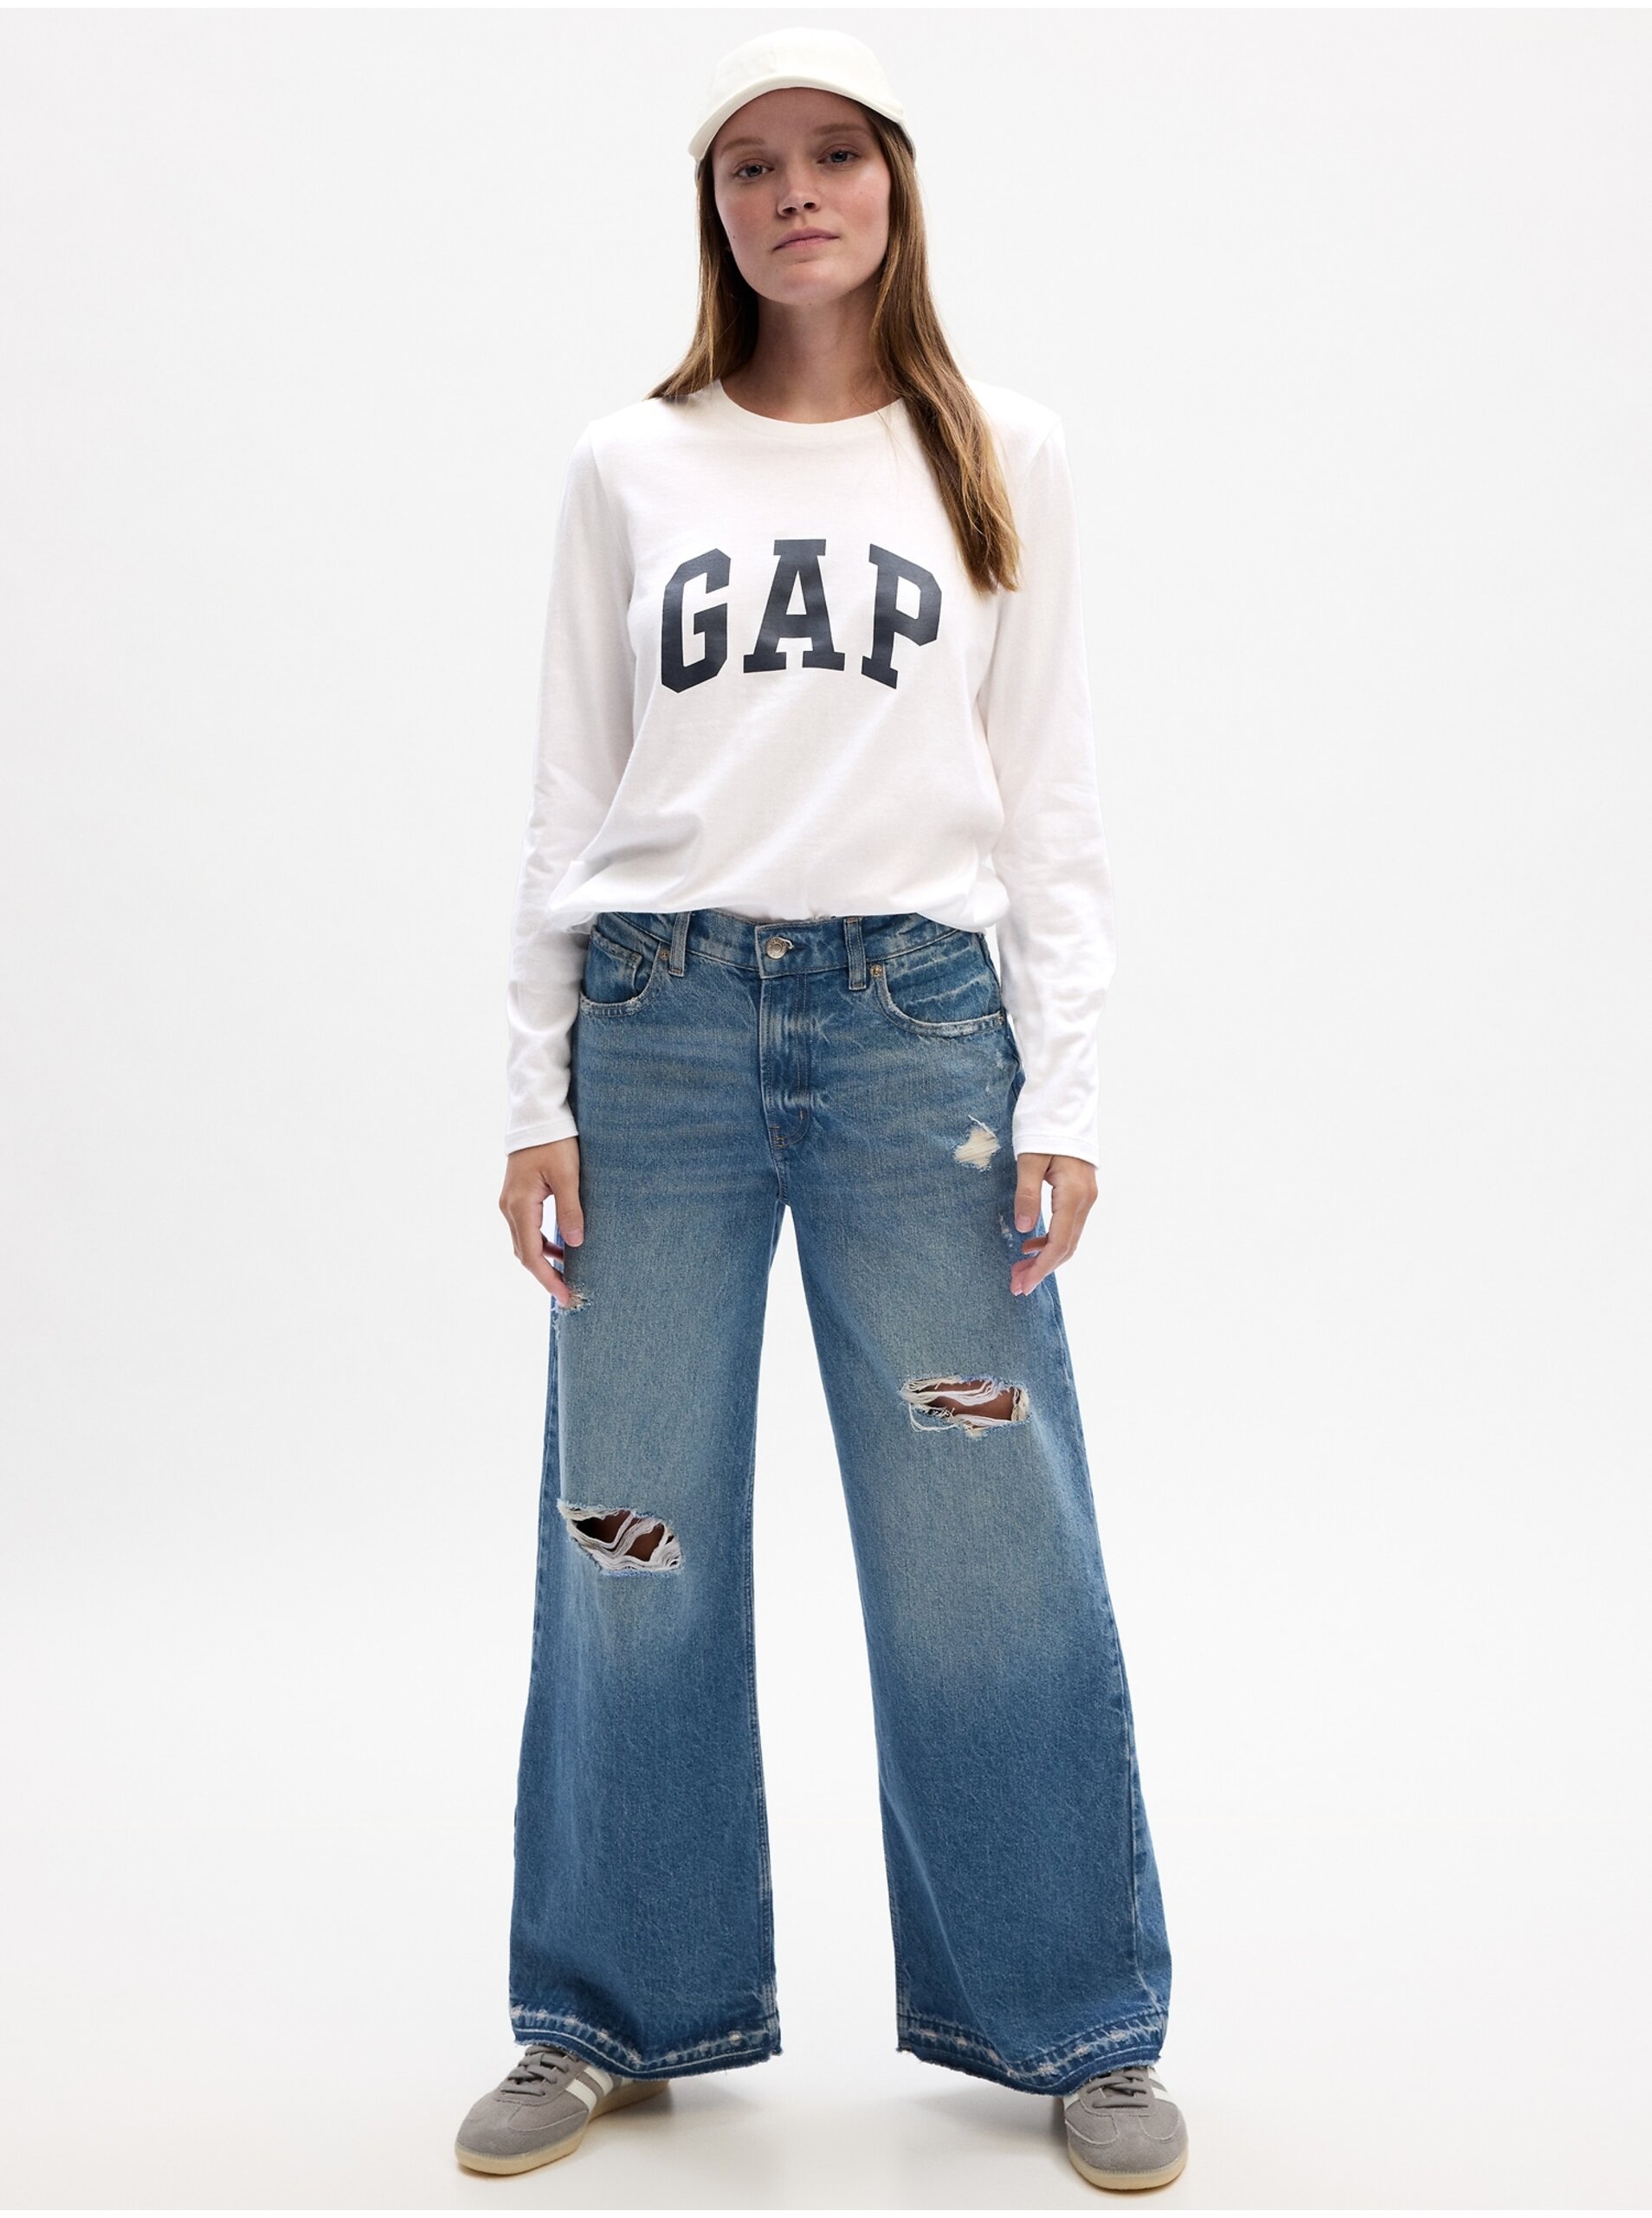 E-shop Bílé dámské tričko s logem GAP